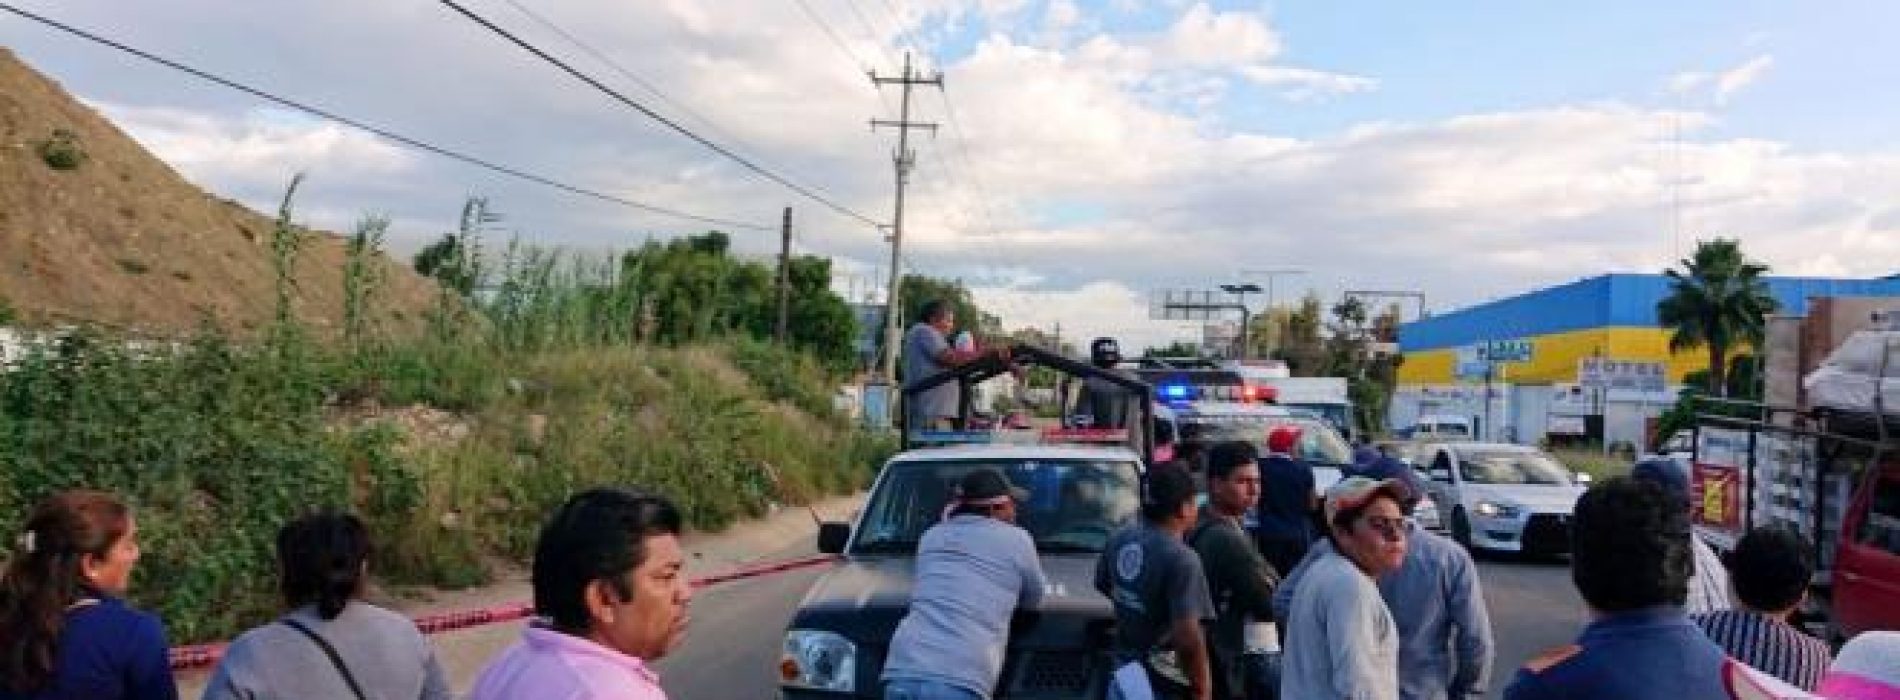 Sección 22 exige justicia por profesor asesinado en Oaxaca